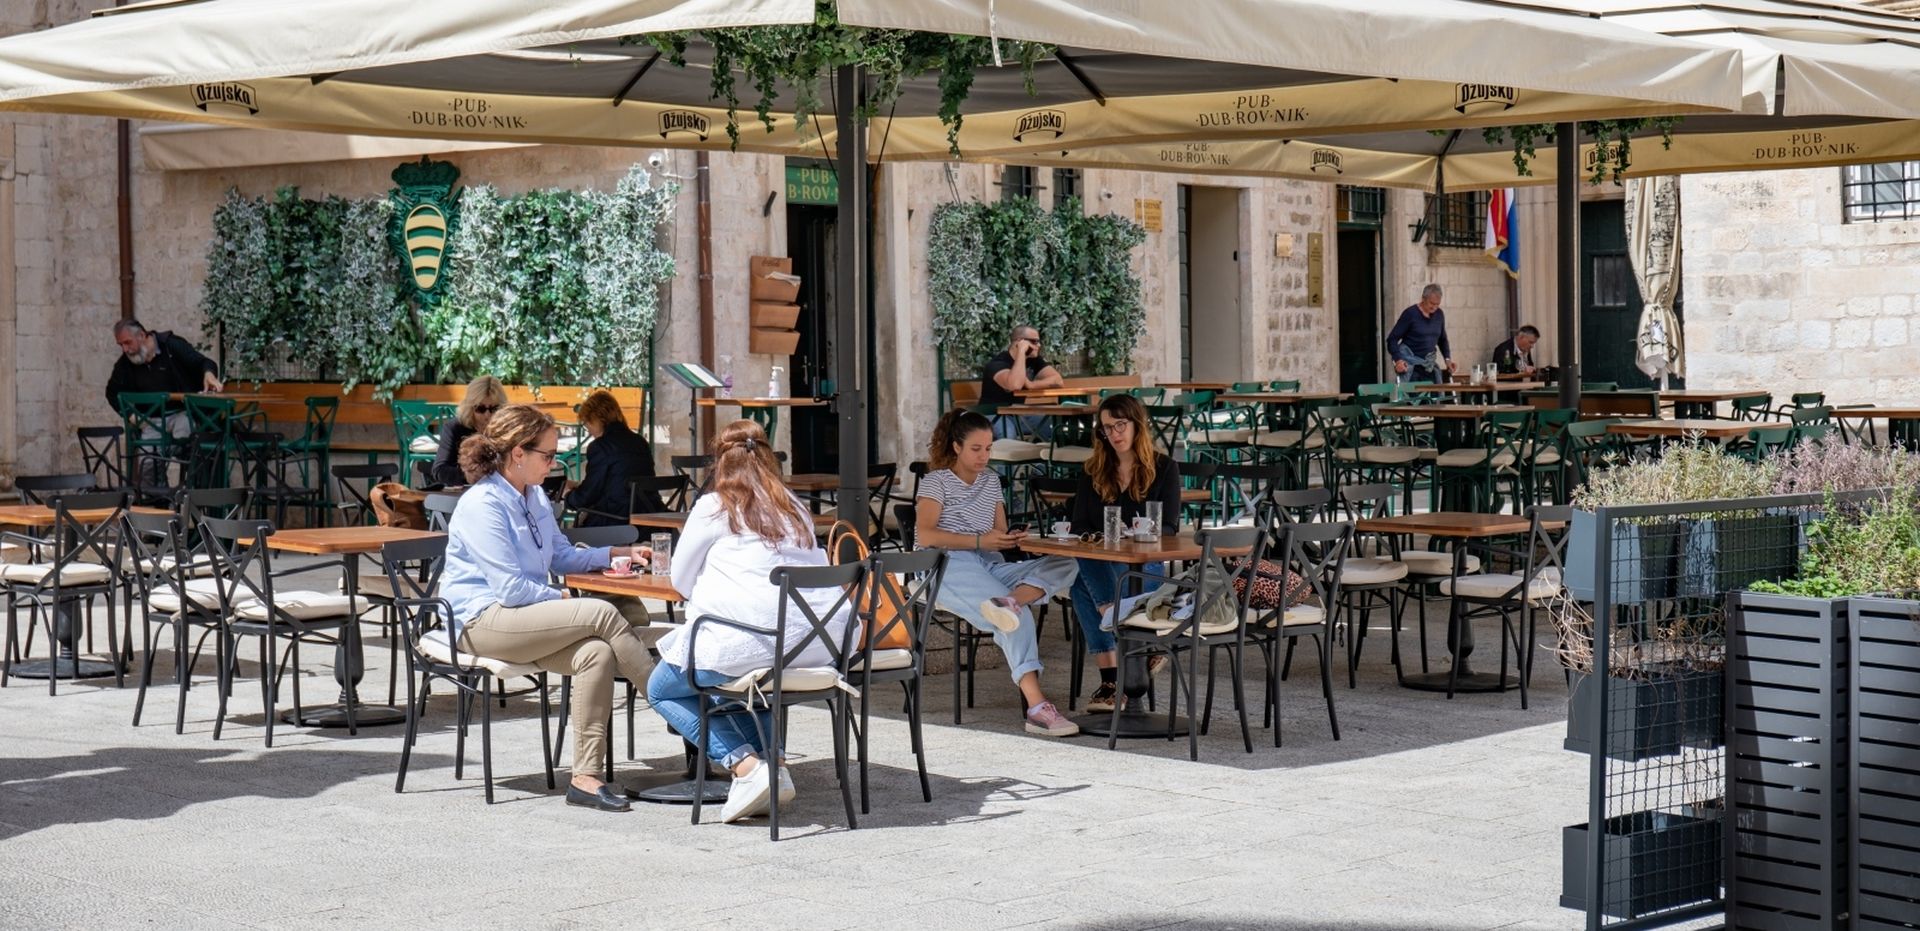 11.05.2020., Dubrovnik - Popustanjem mjera i otvaranjem kafica dubrovacki Stradun polako se vraca u normalu. Photo: Grgo Jelavic/PIXSELL